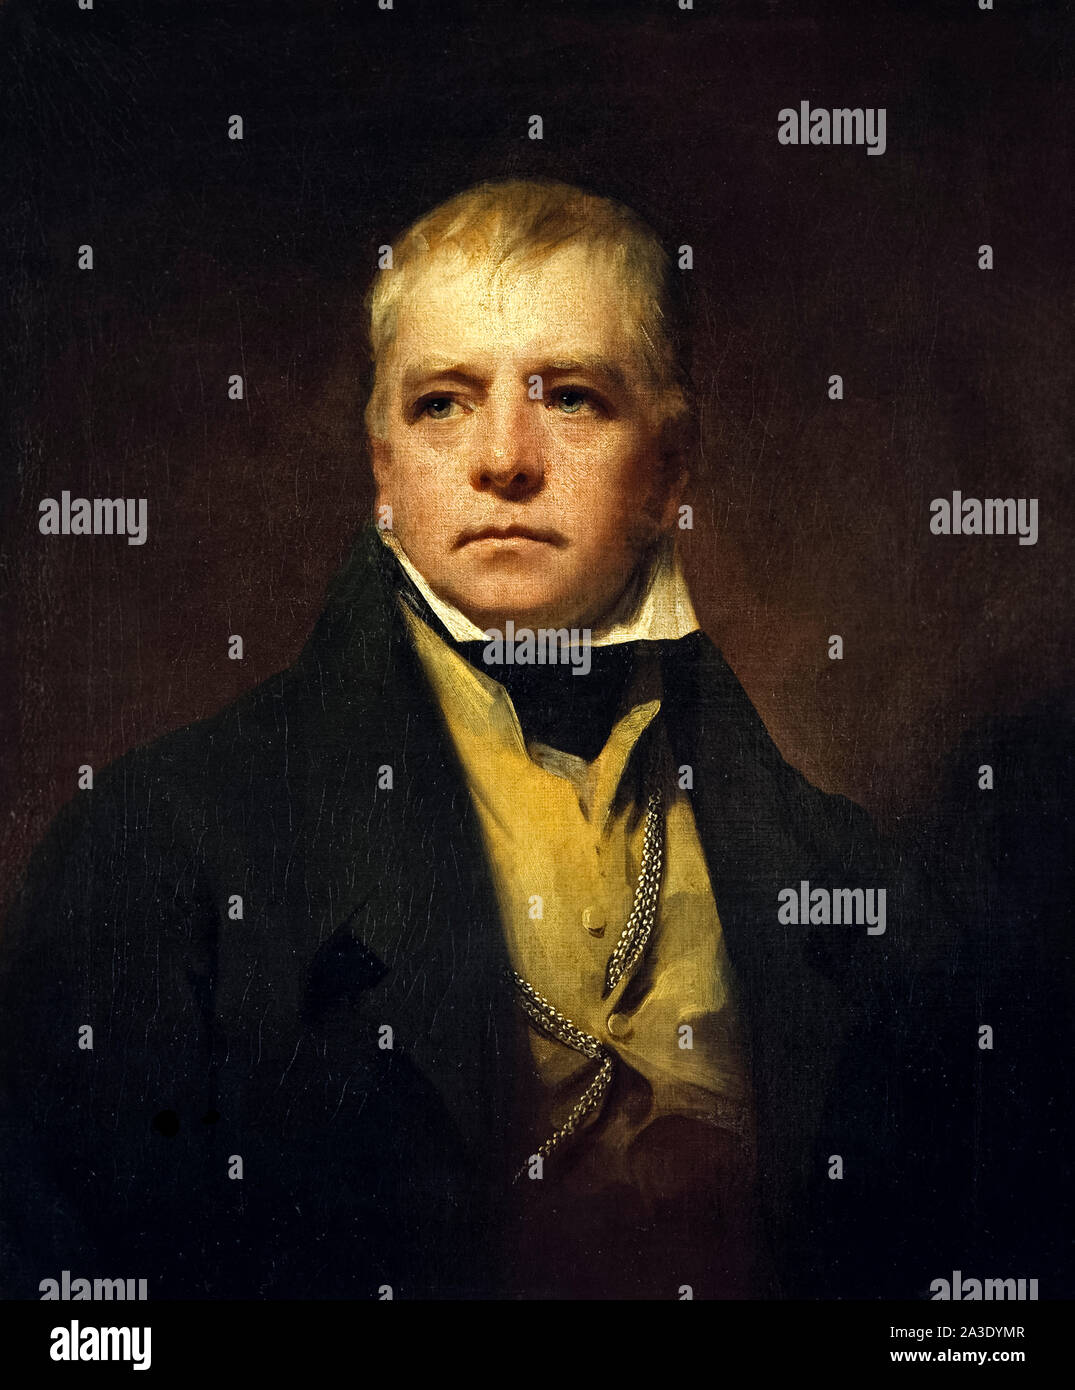 Sir Walter Scott (1771-1832) autore scozzese, poeta e storico le cui opere rimangono classici della letteratura inglese. Pittura di olio da Sir Henry Raeburn (1756-1823) dipinse nel 1822. Foto Stock